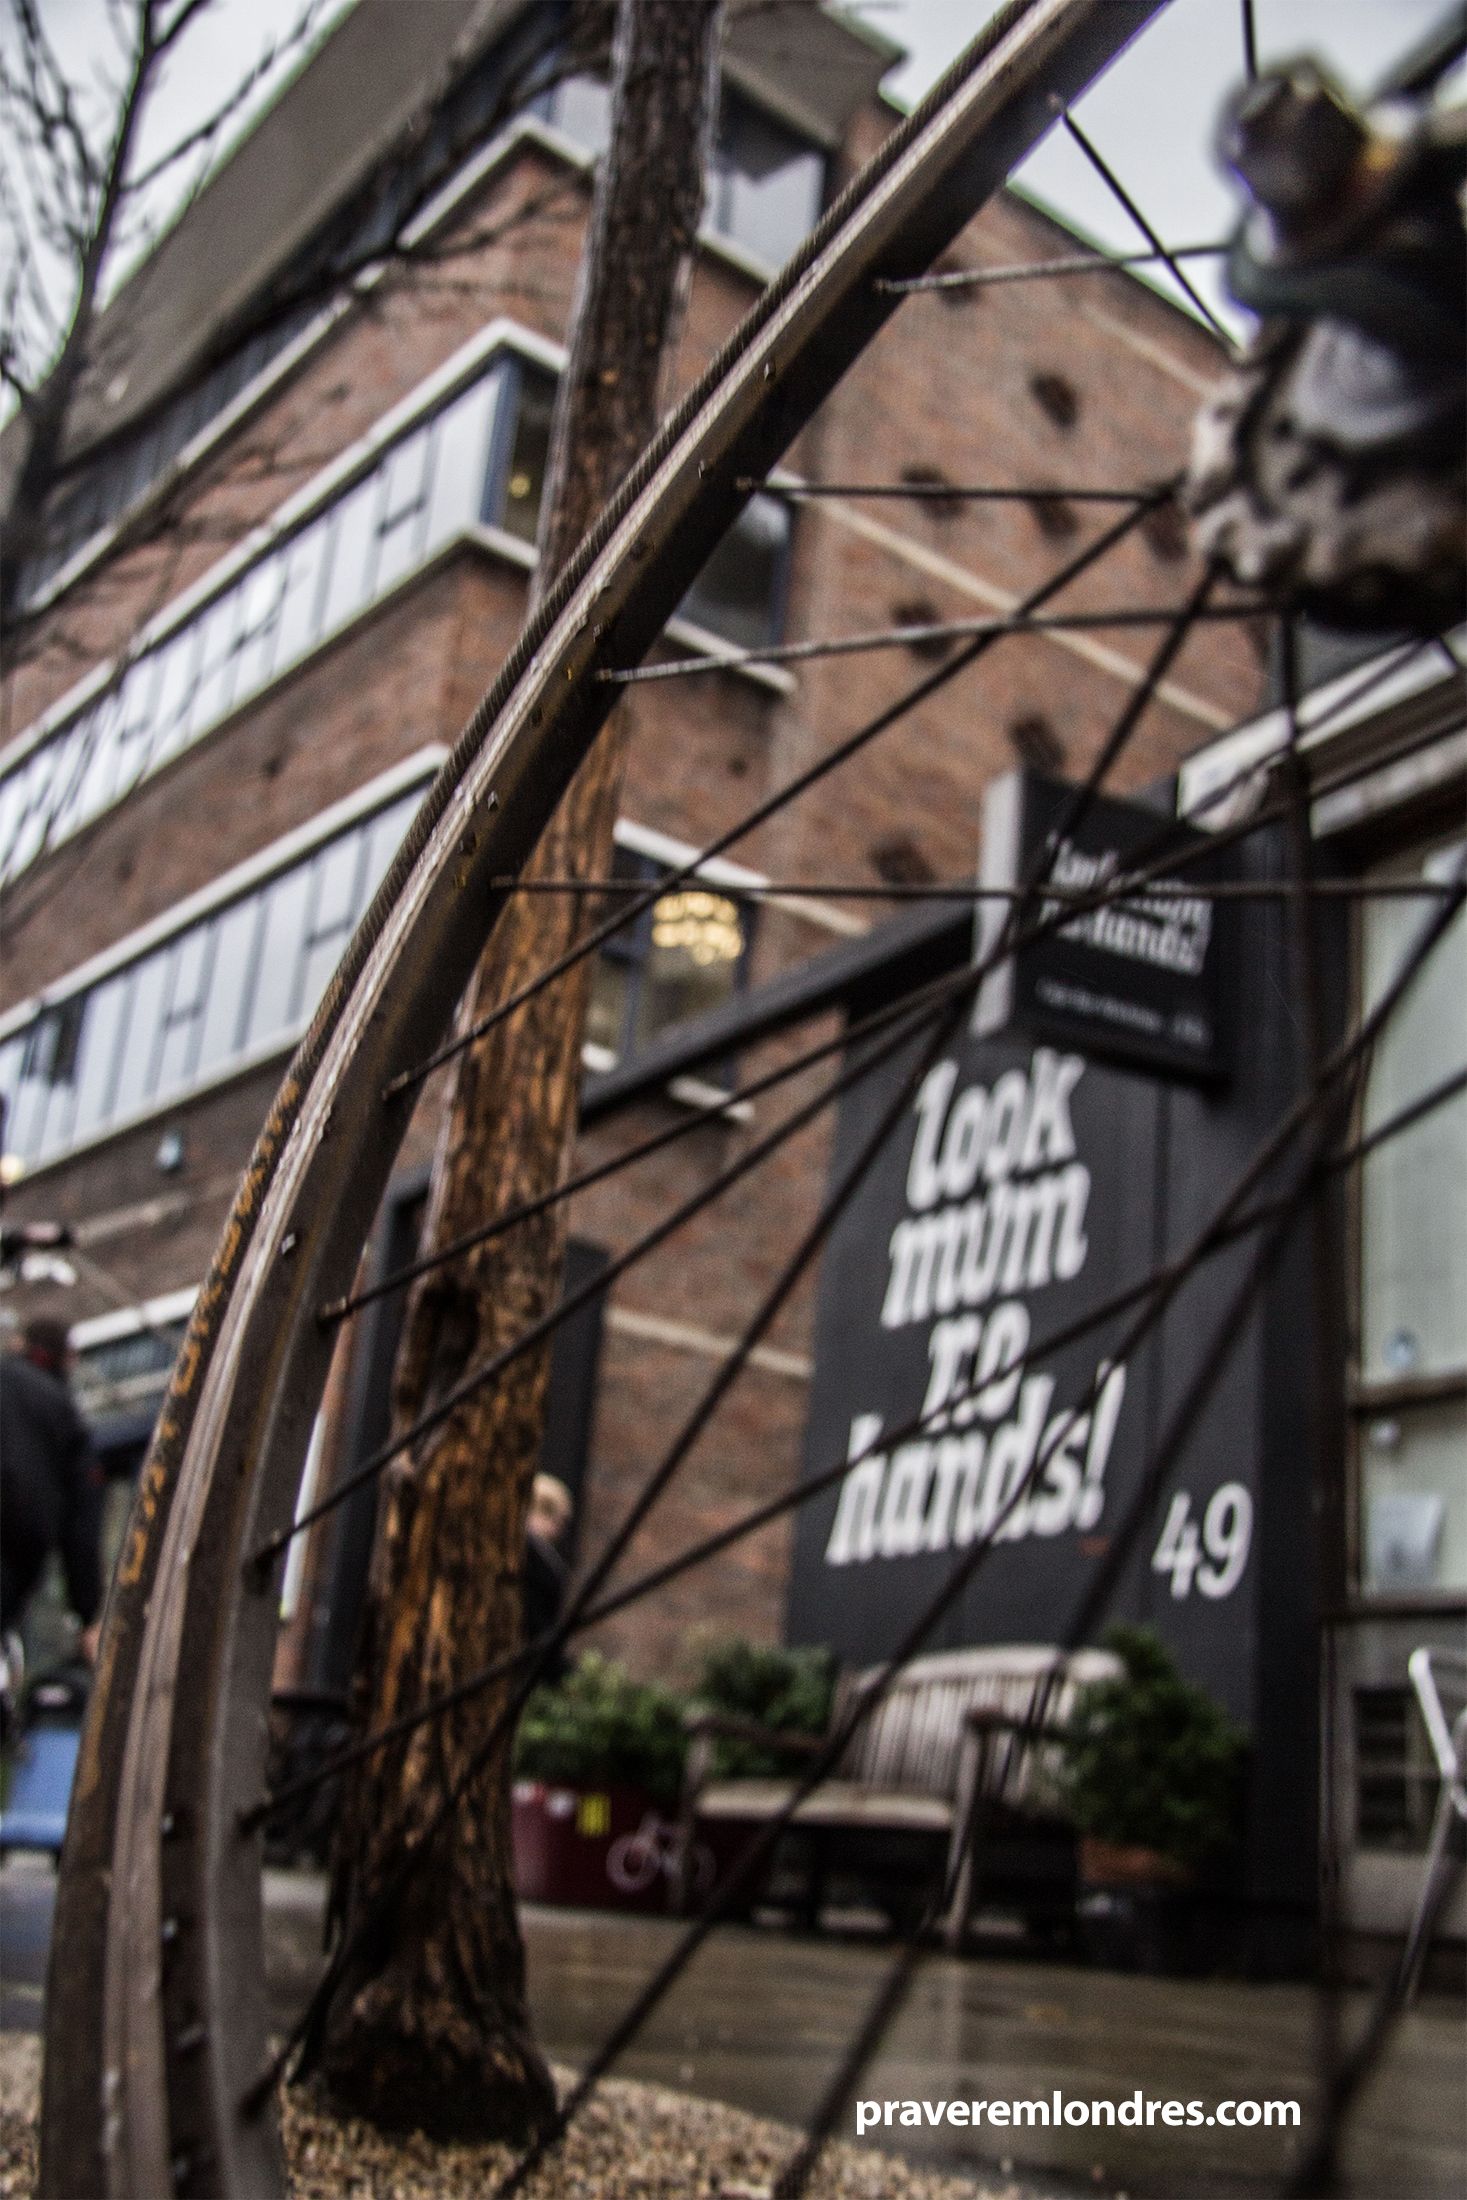 Um café em Londres inspirado no universo do ciclismo: Look Mum No Hands